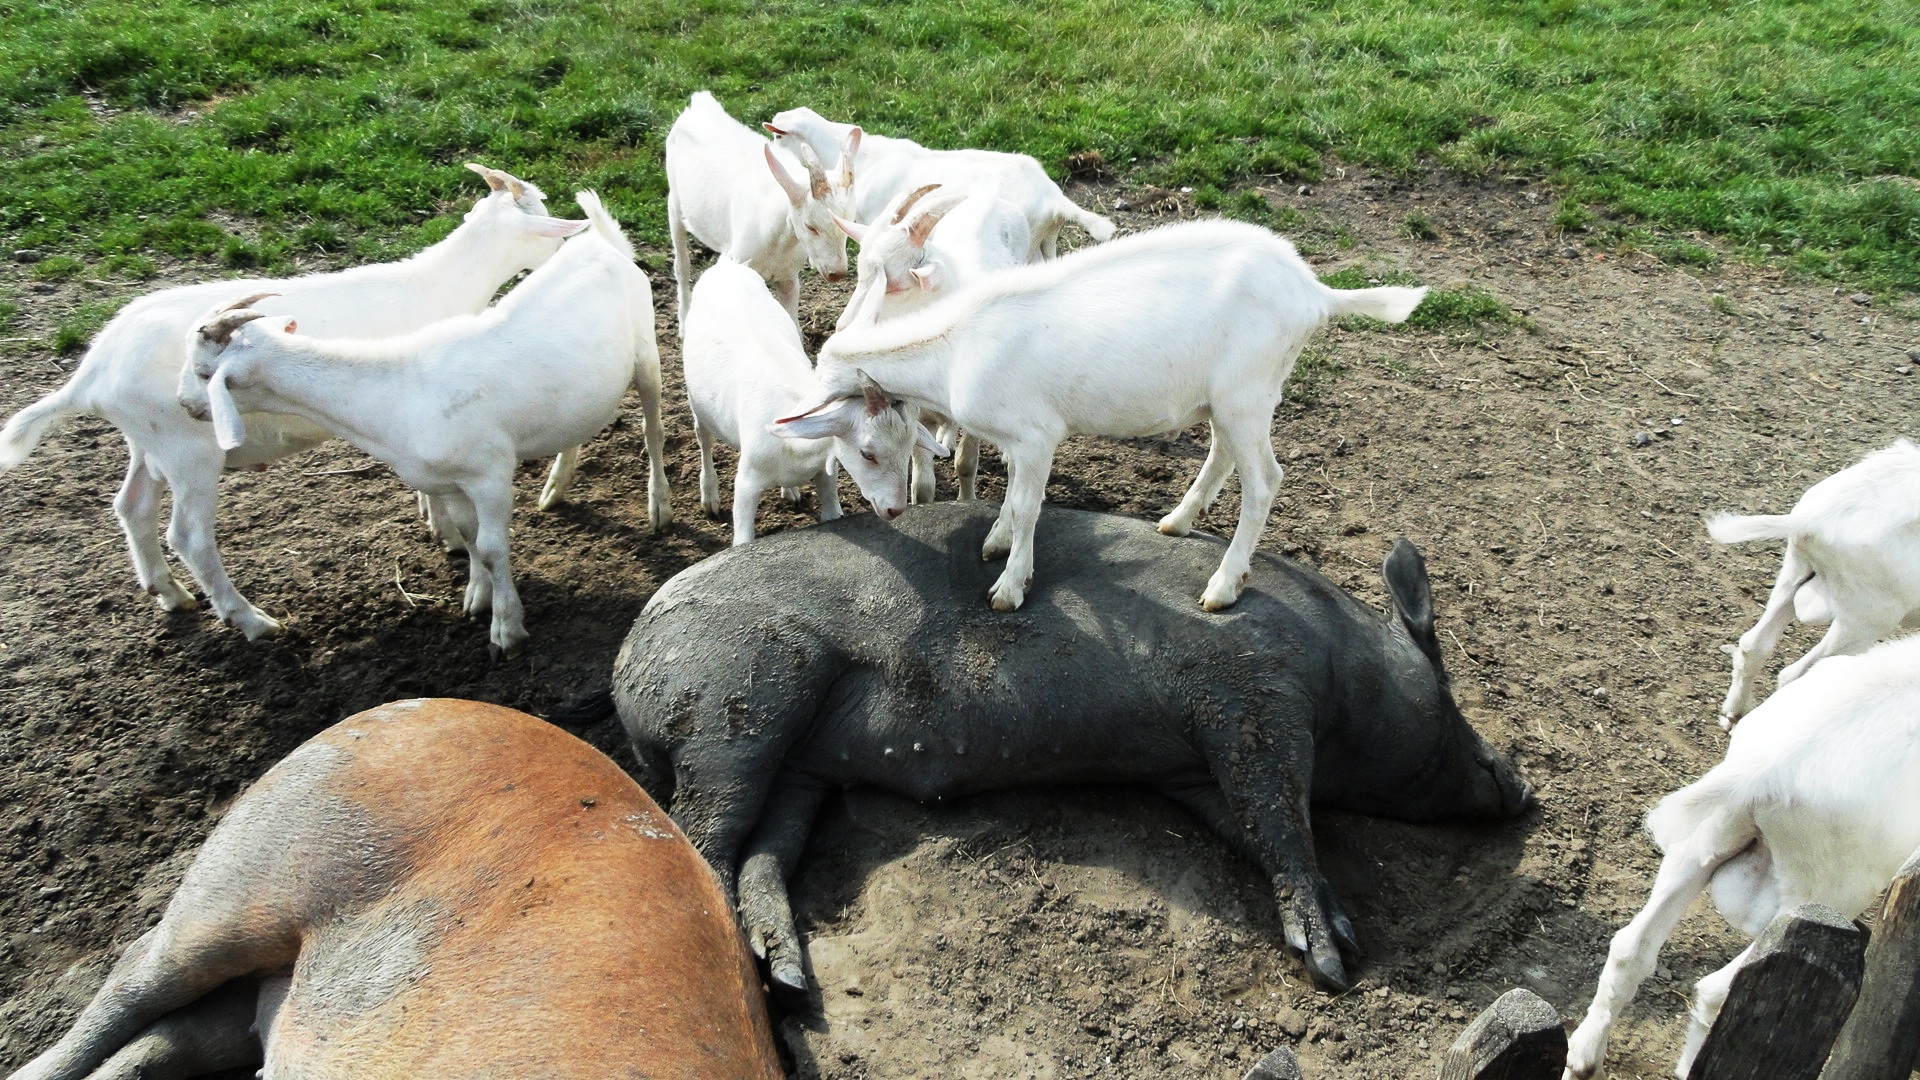 Amsterdamse Bos - Massage d'un cochon par une biquette